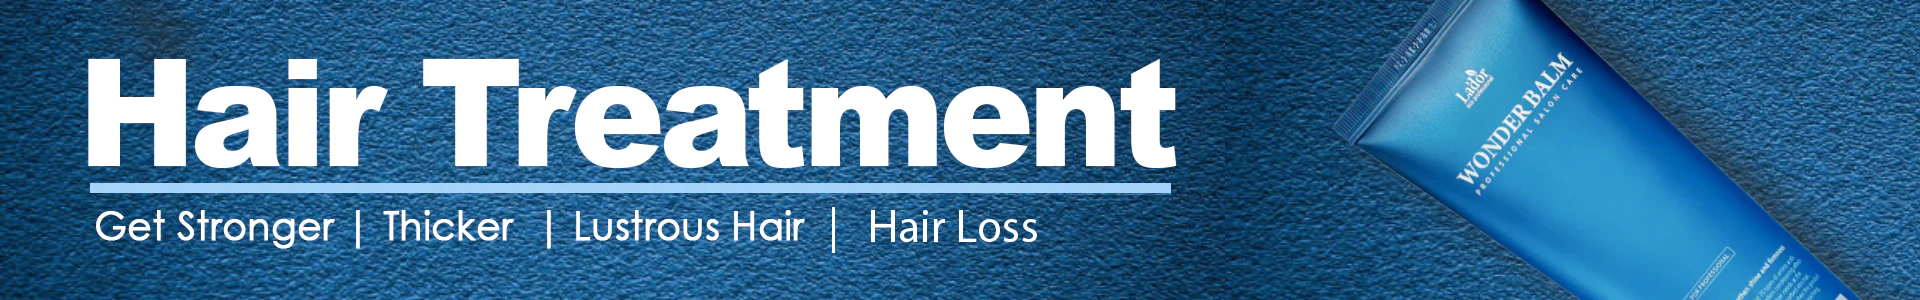 Hair Loss / Hair Treatment